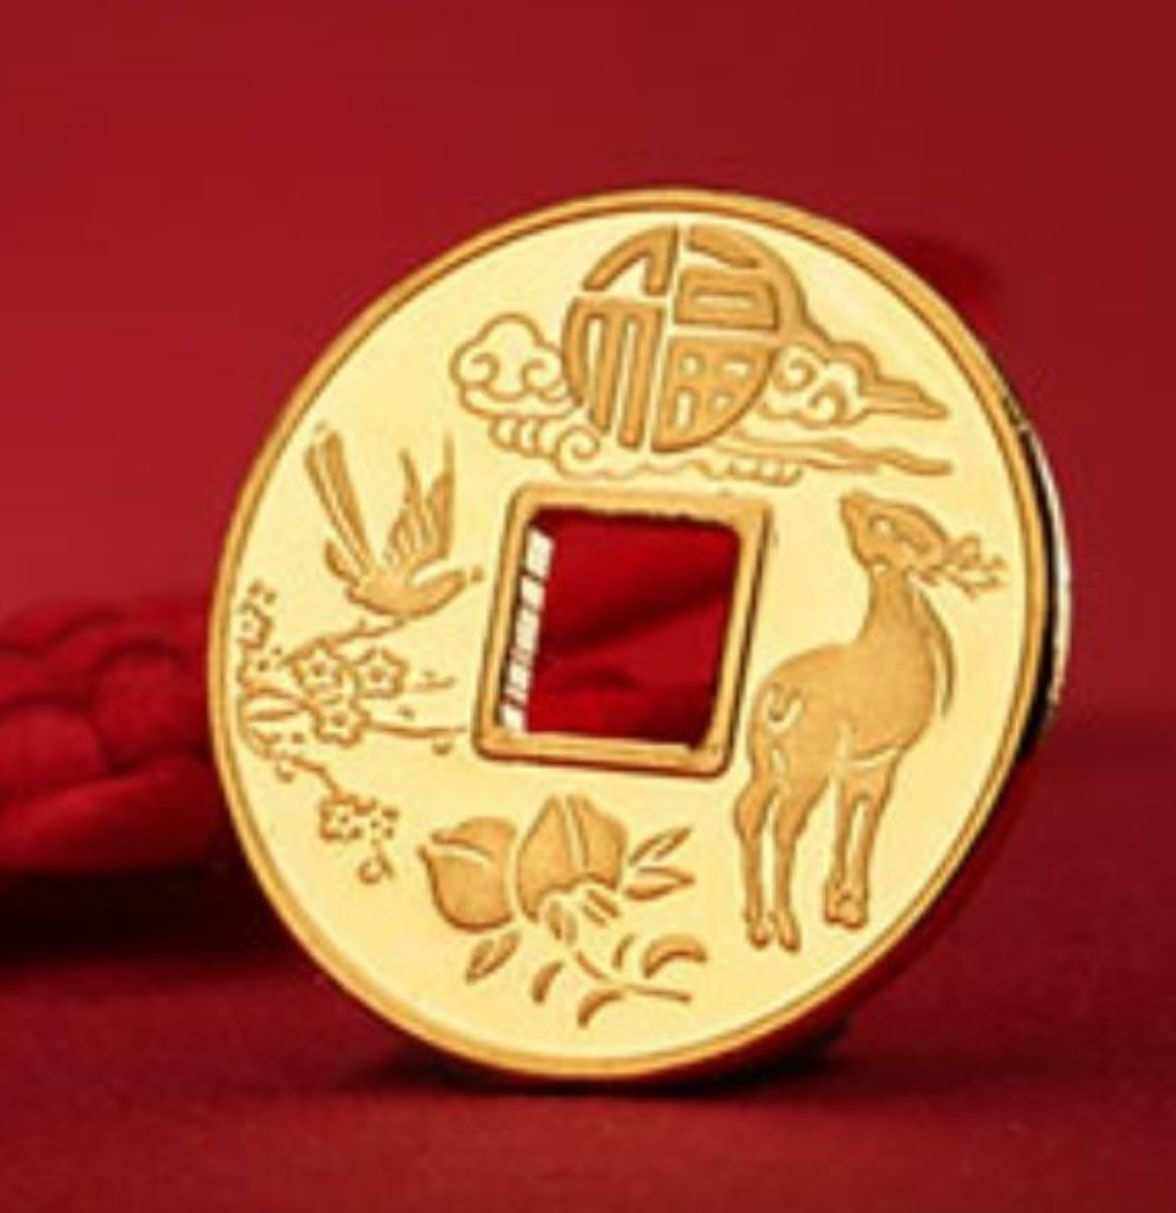 中国农行贵金属纪念币(中国农行贵金属纪念币最新消息)